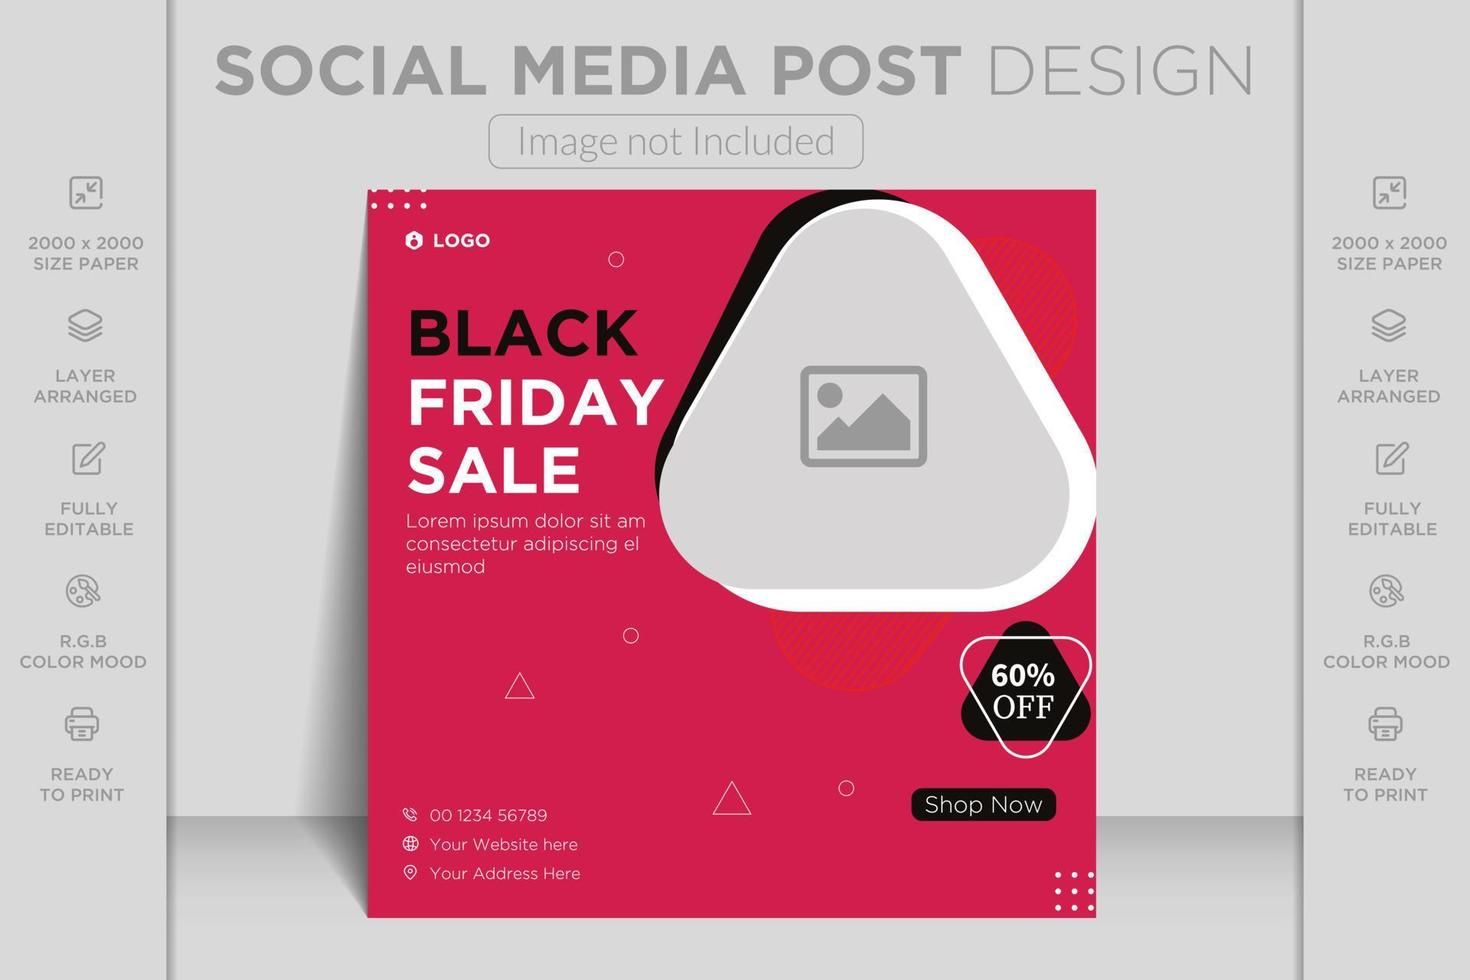 super venta de viernes negro con oferta especial publicación en redes sociales, diseño de plantilla de banner para marketing vector